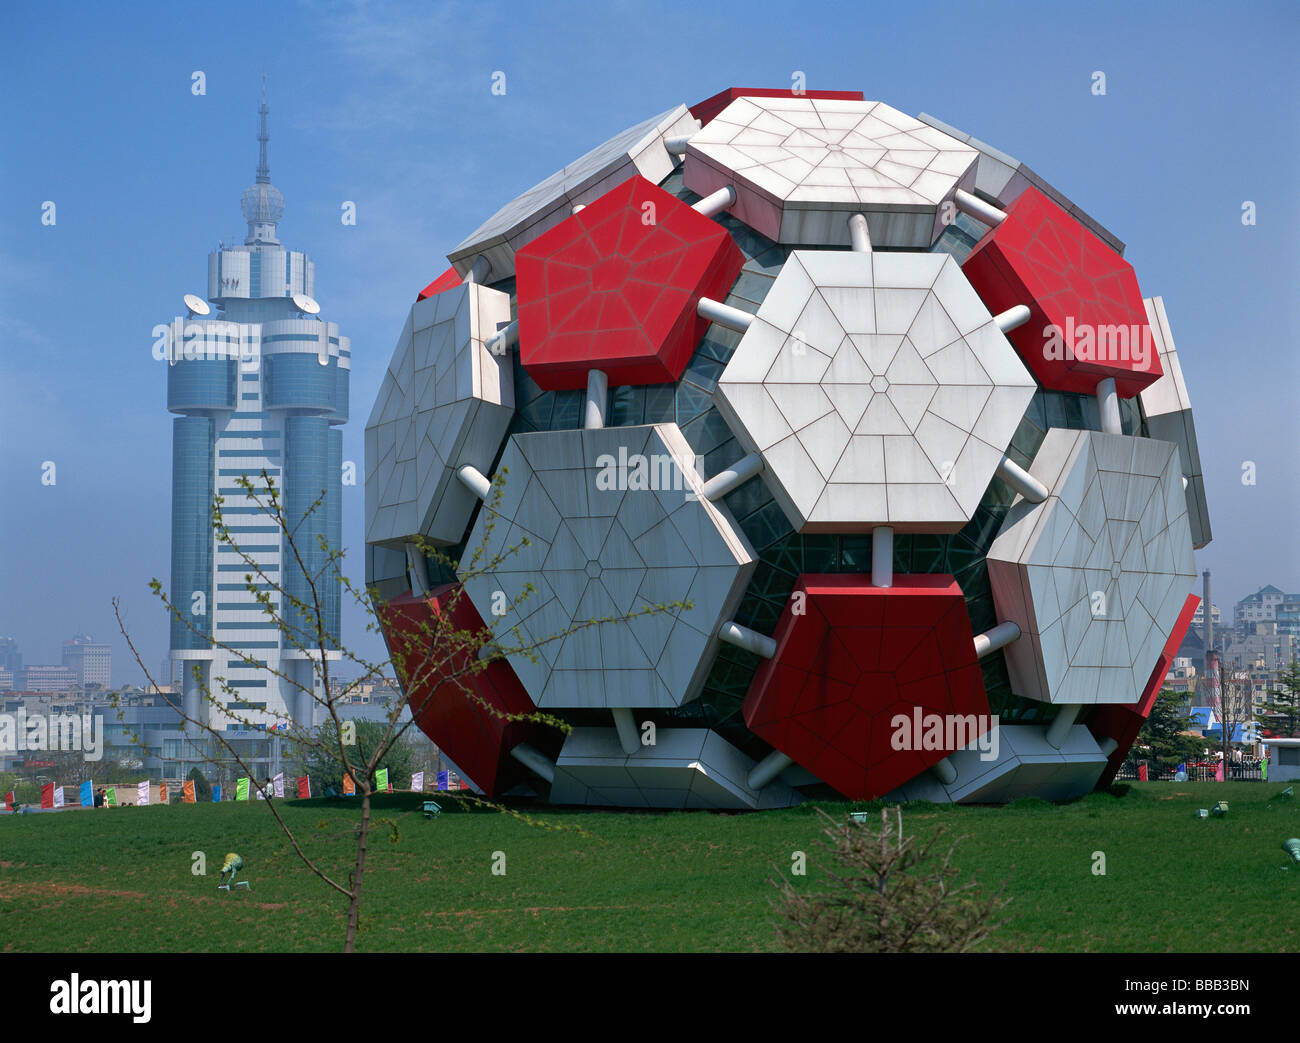 Labour Park mit der Dalian Stadt Art of Architecture Gallery in Fußball-Form Stockfoto